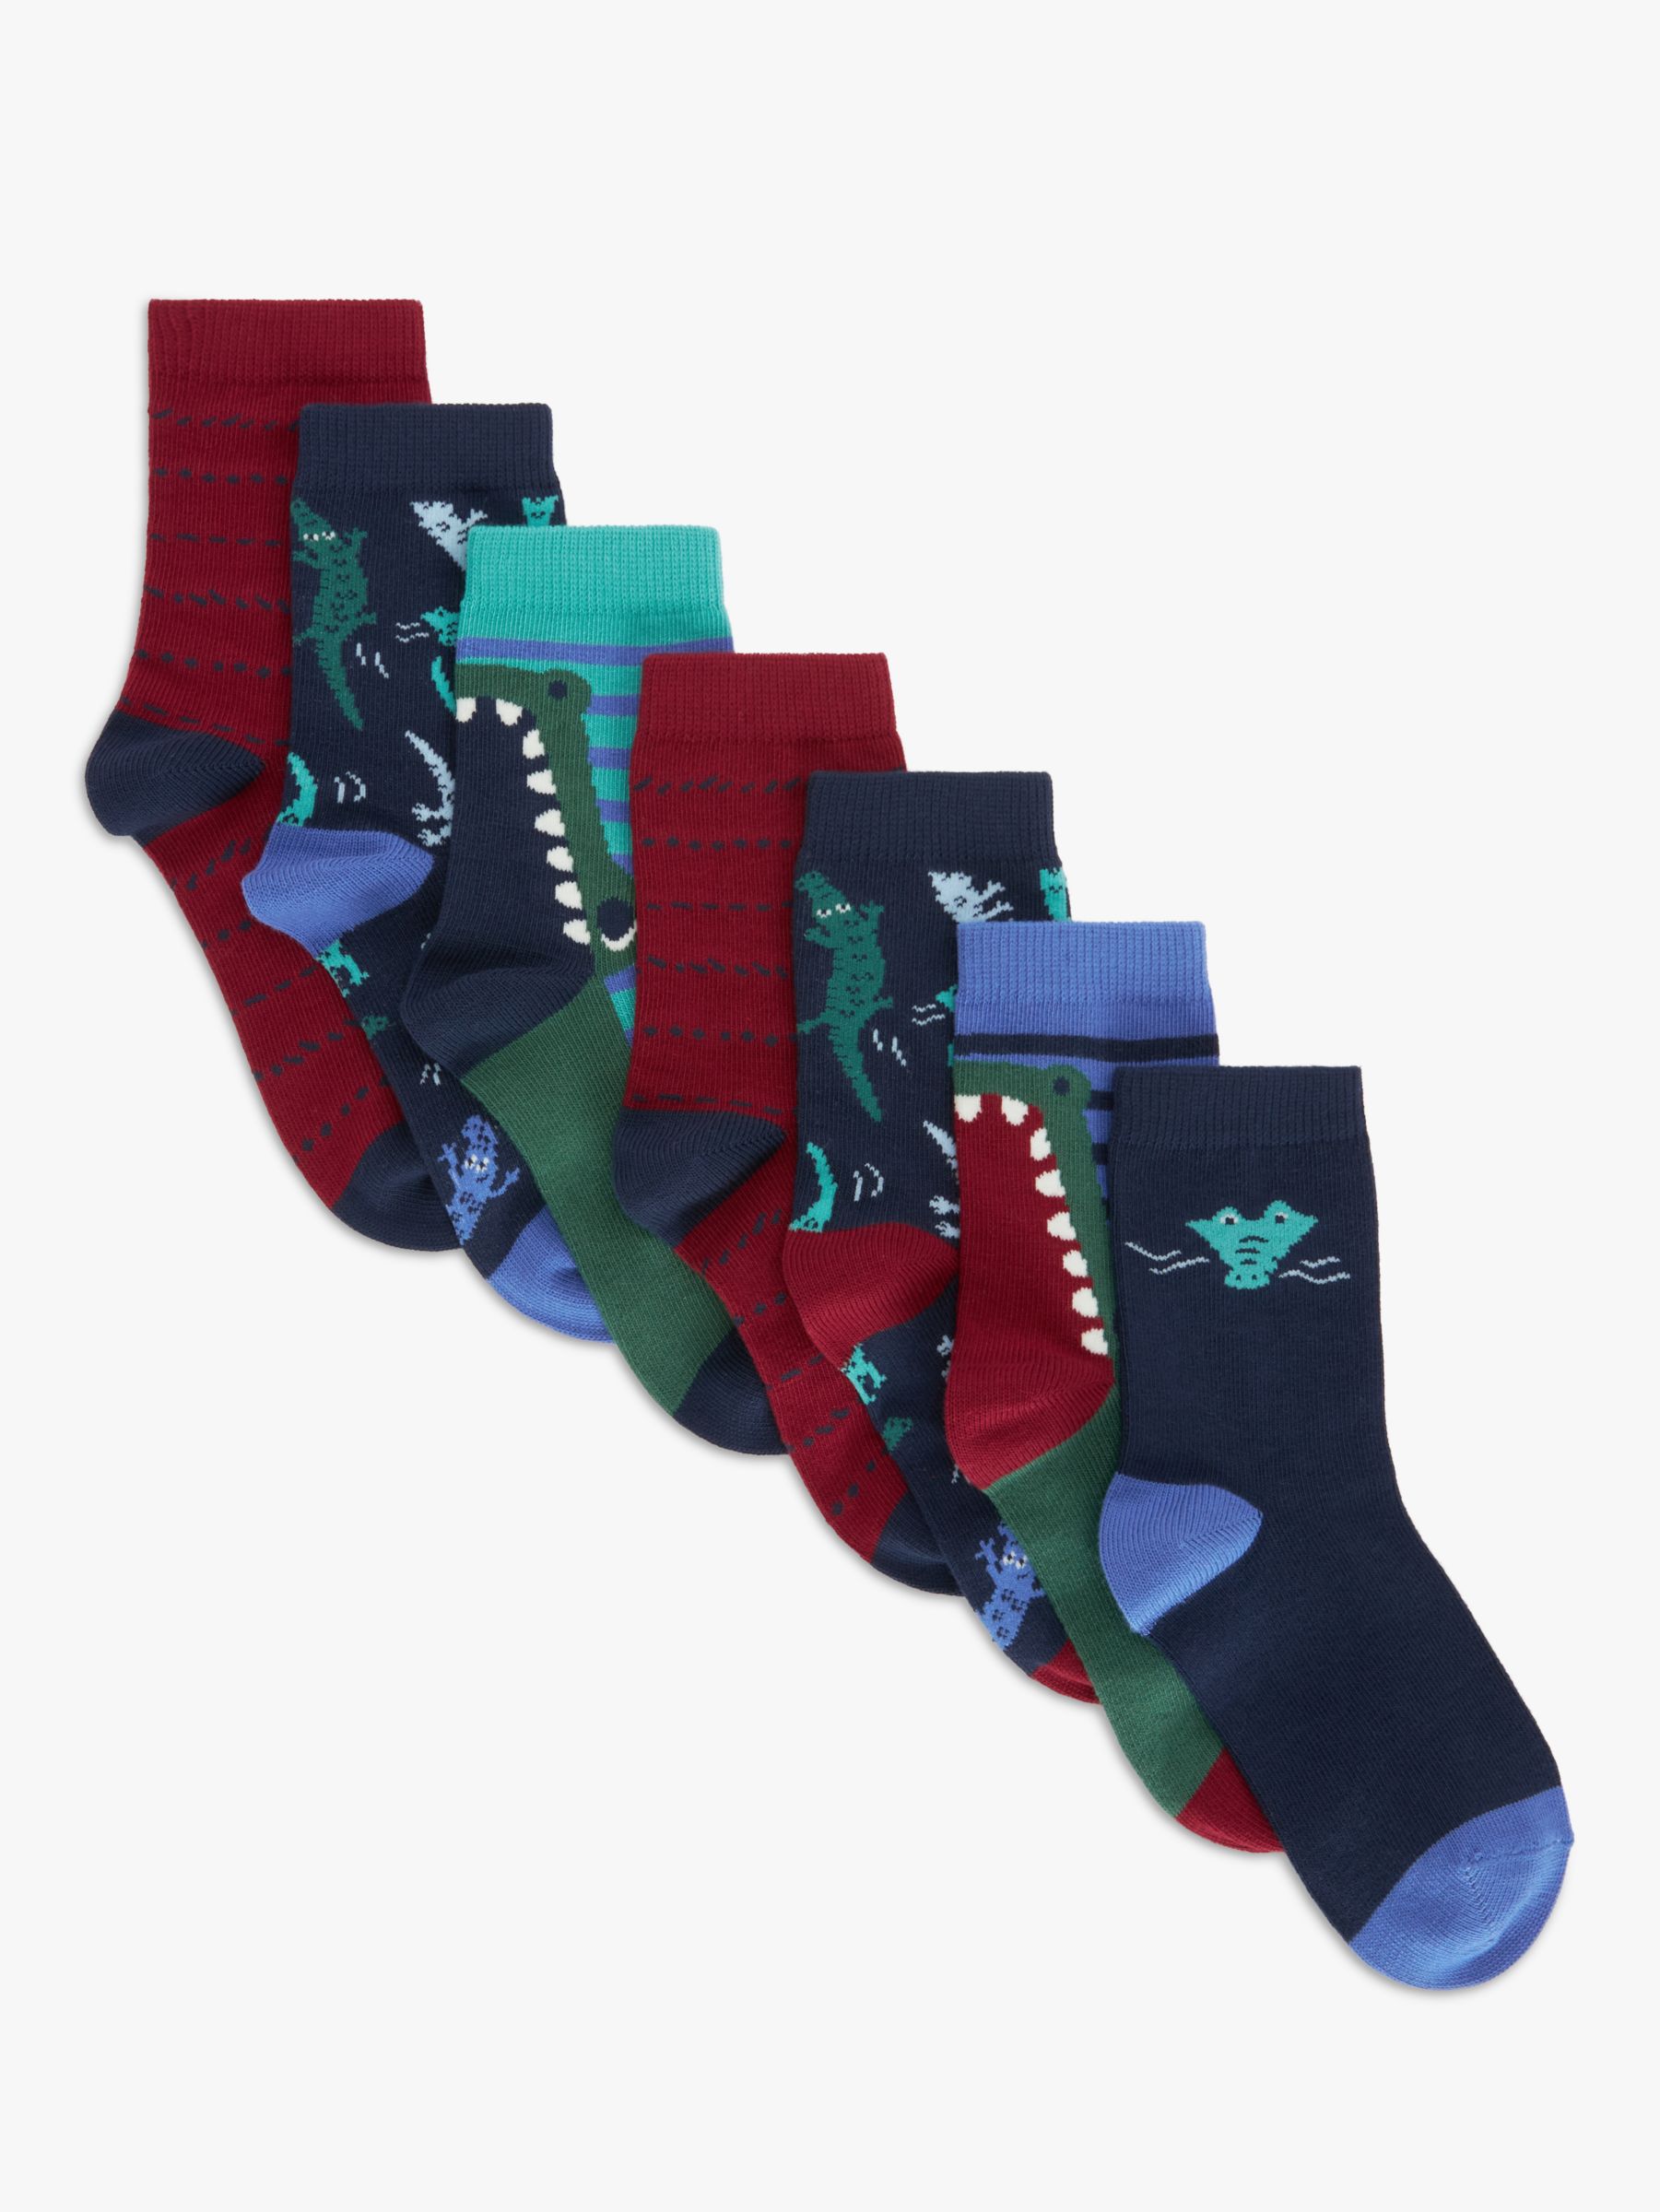 John Lewis Kids' Croc Socks, Pack of 7, Multi, 12.5 Jnr -3.5